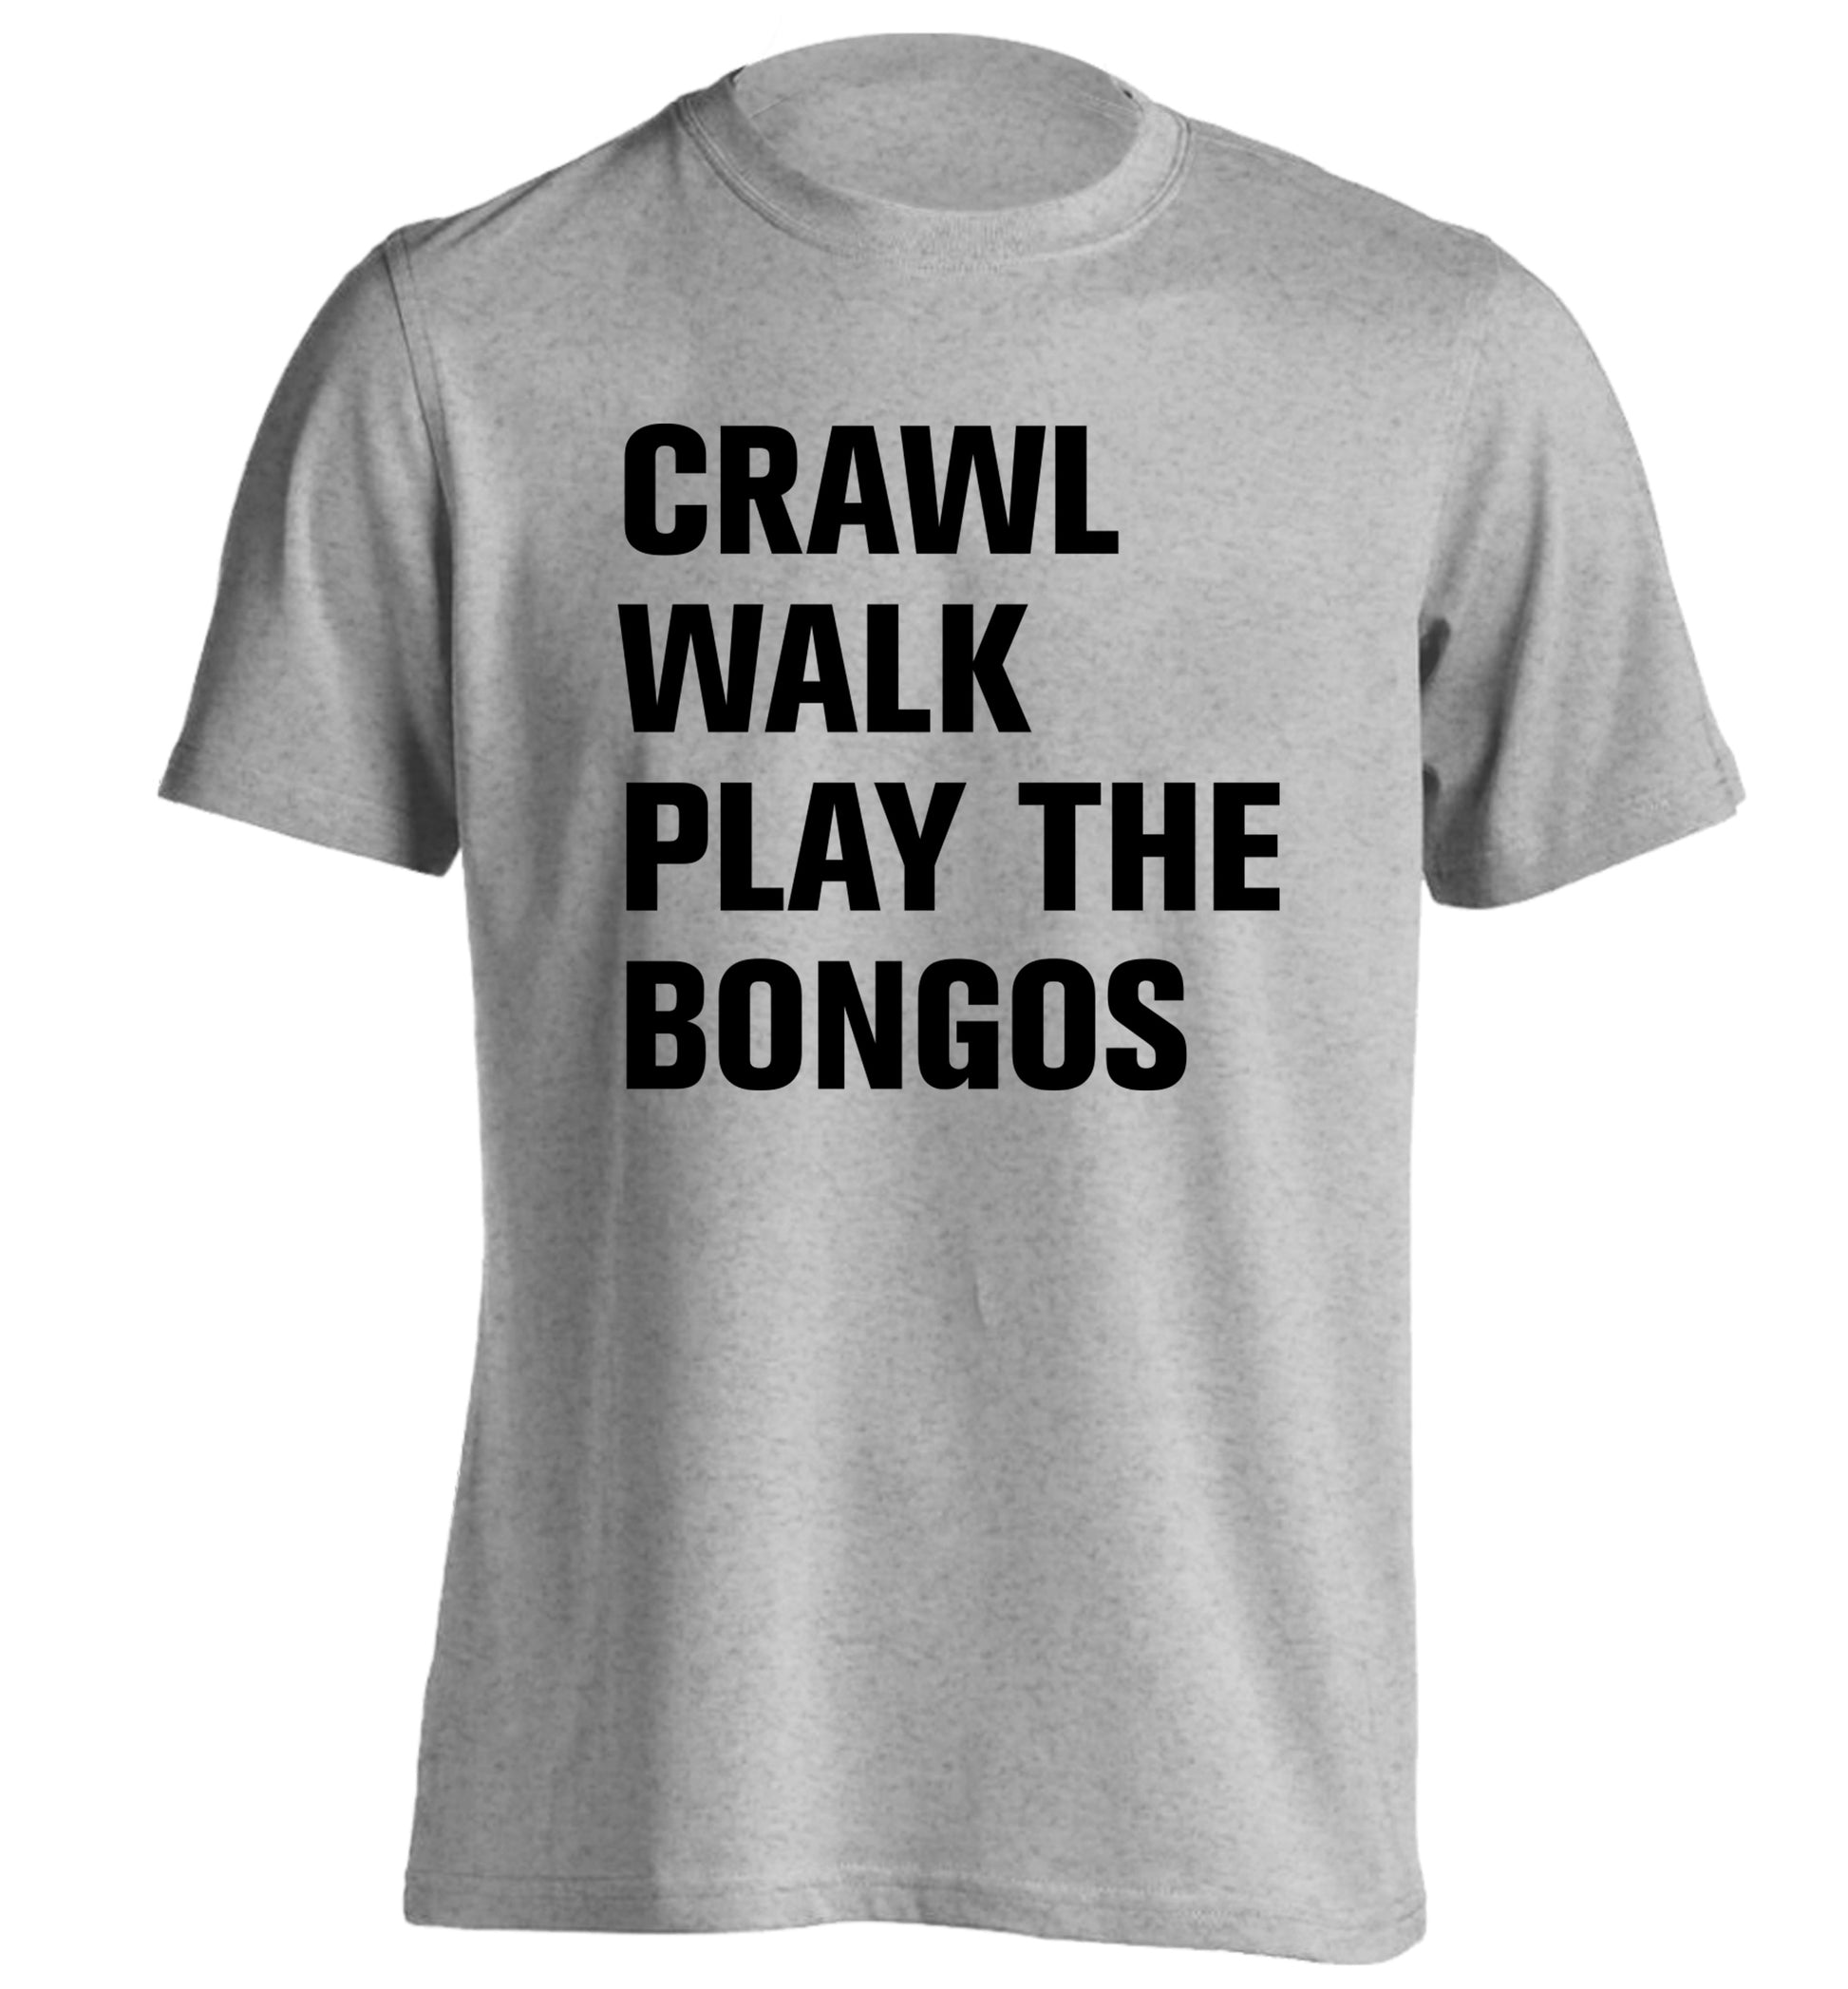 Crawl Walk Play Bongos adults unisex grey Tshirt 2XL